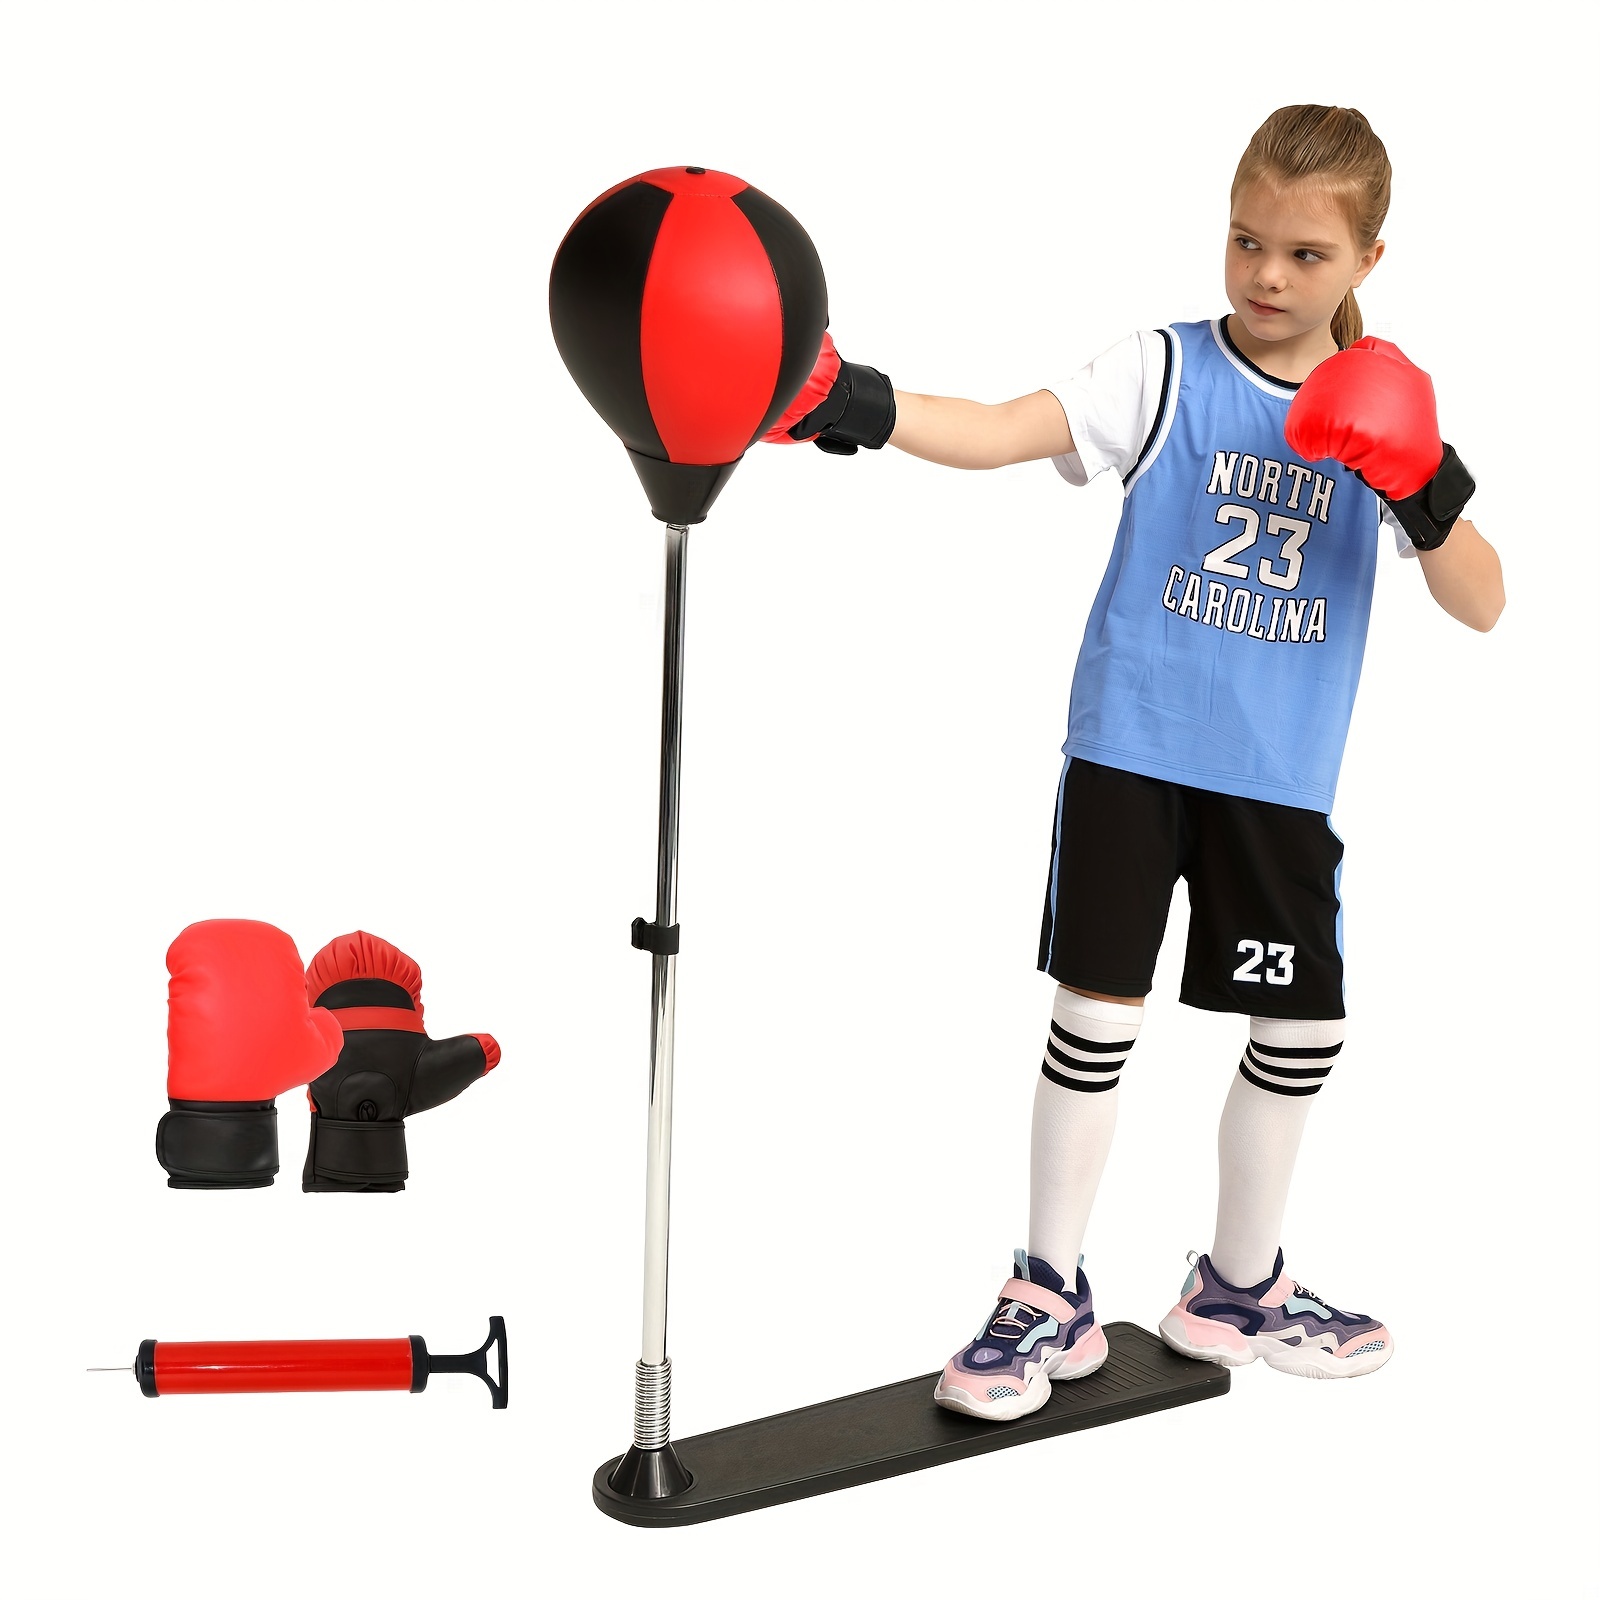 KMUYSL Saco de boxeo para niños, saco de boxeo con guantes, saco de boxeo  ajustable en altura para niños de 5, 6, 7, 8, 9 y 10 años, regalo ideal de